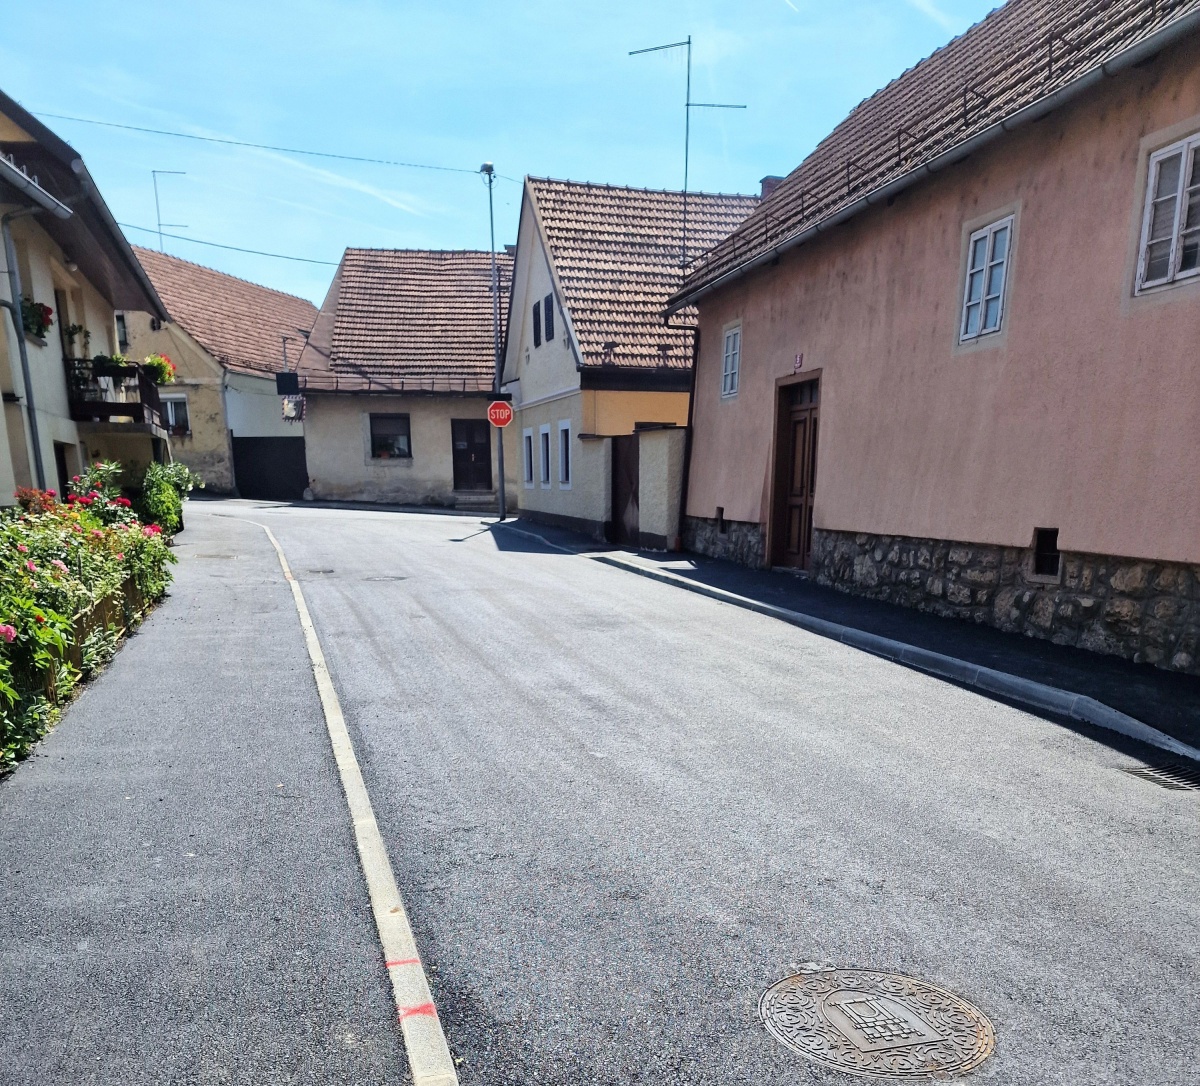 Ulica Pod lipo in del Vojinske ceste z obnovljeno infrastrukturo